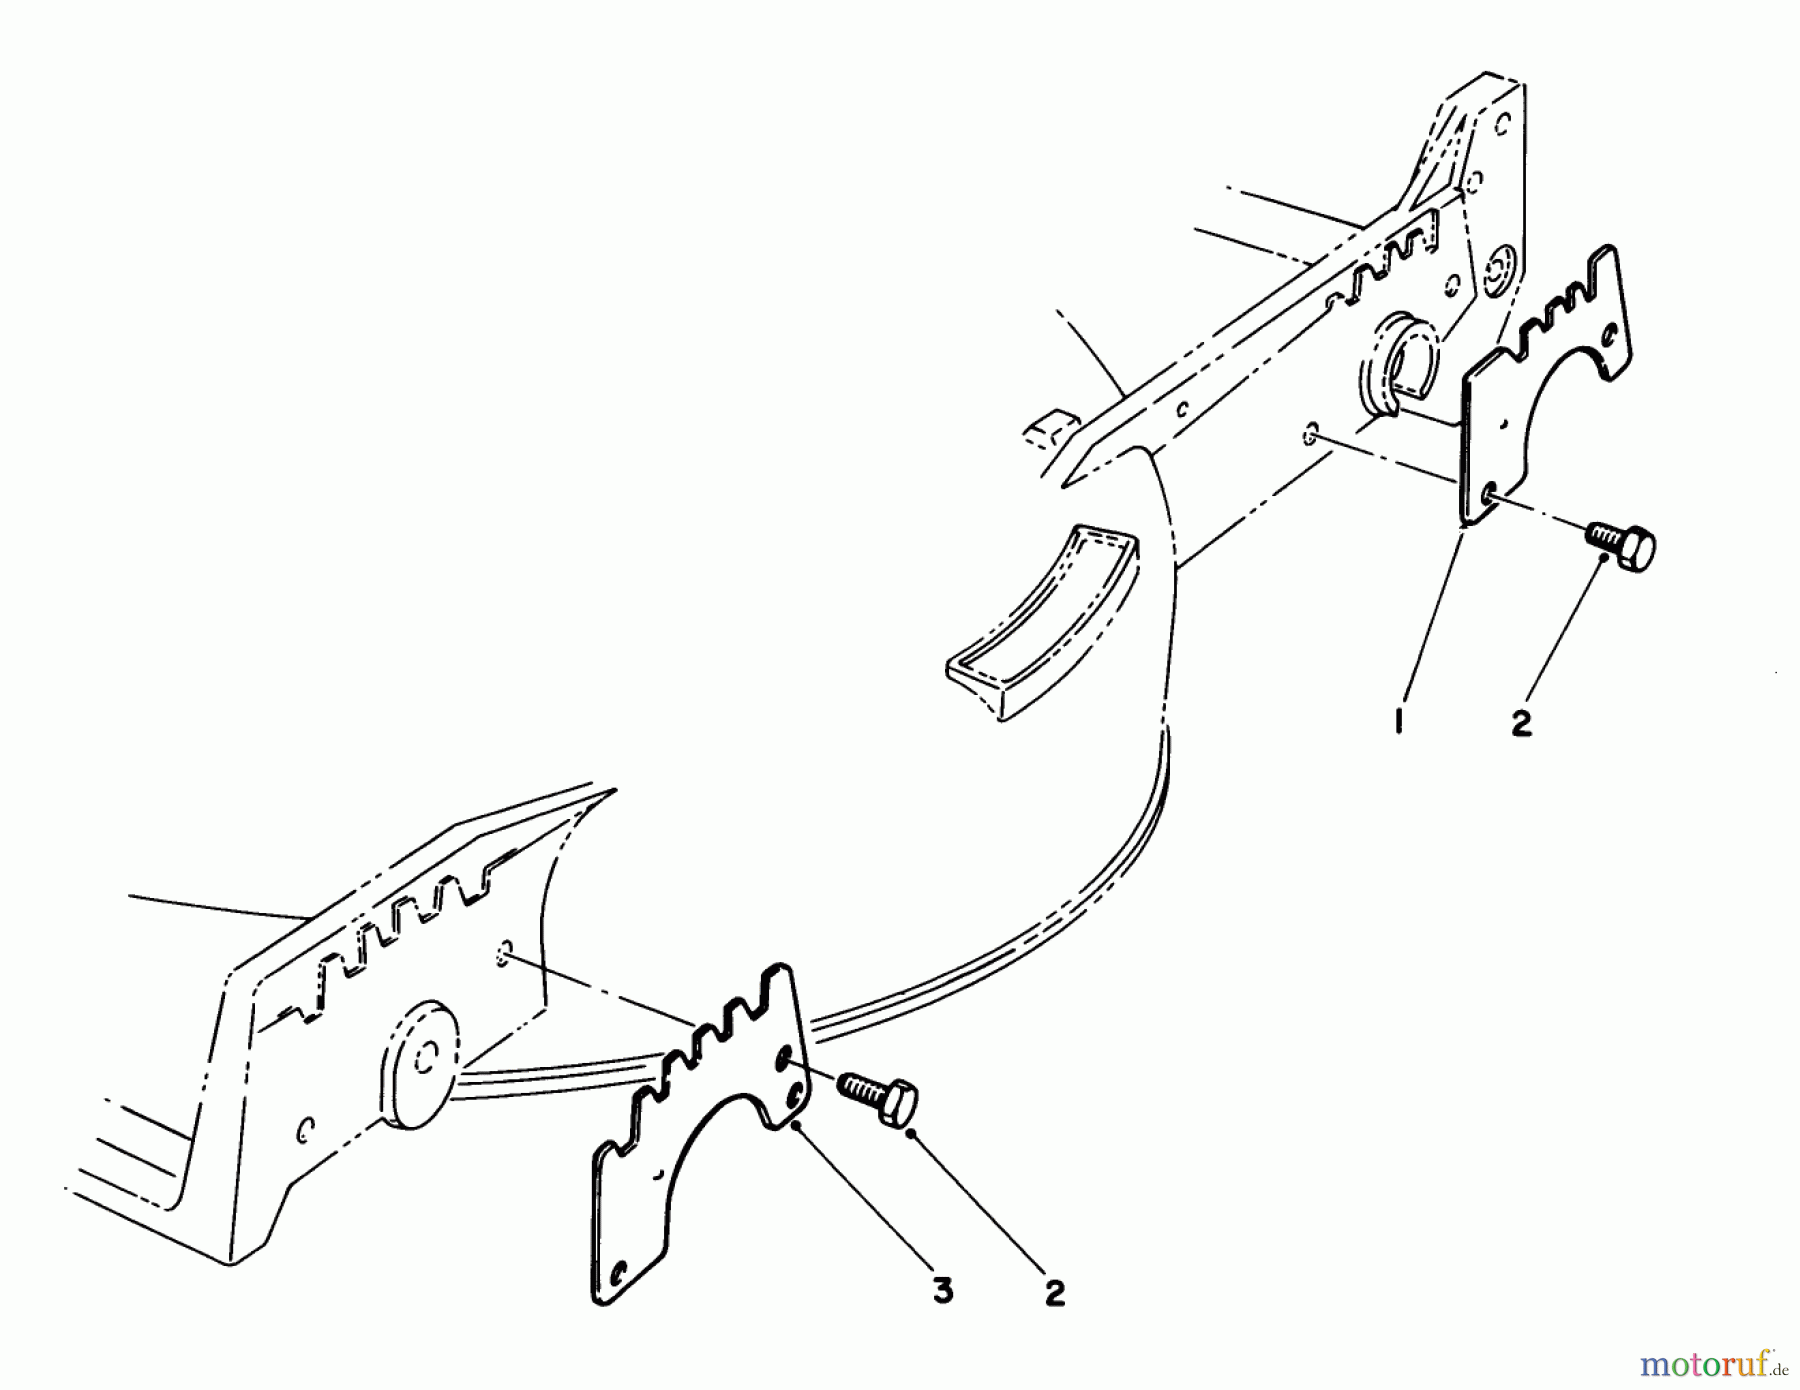  Toro Neu Mowers, Walk-Behind Seite 1 20747C - Toro Lawnmower, 1988 (8000001-8999999) WEAR PLATE KIT NO. 49-4080 (OPTIONAL)